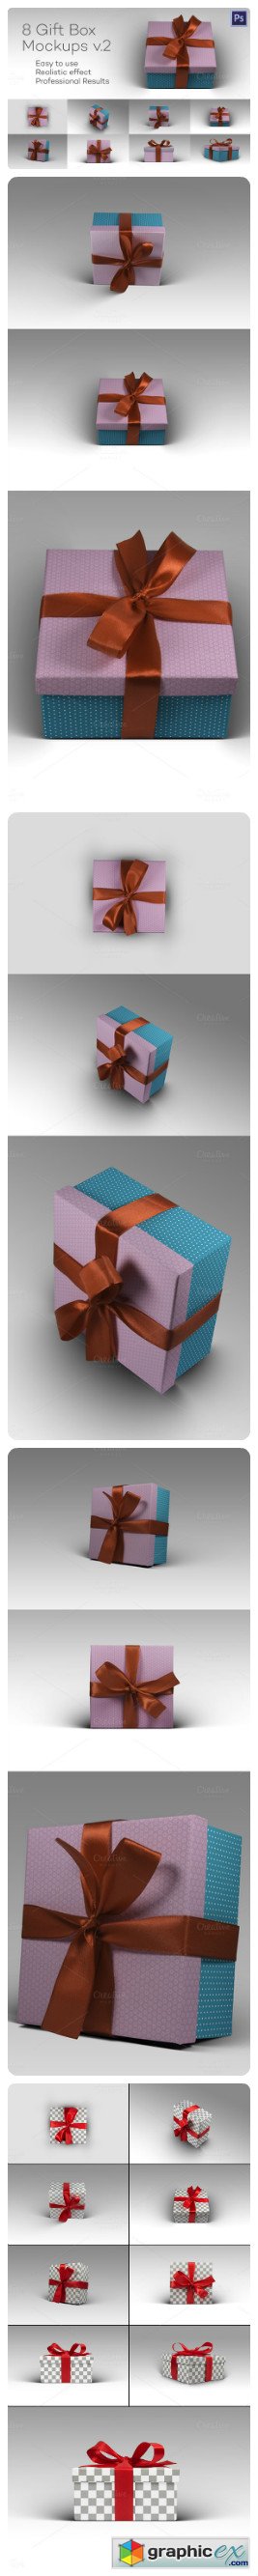 8 Photorealistic Gift Box Mockps v2